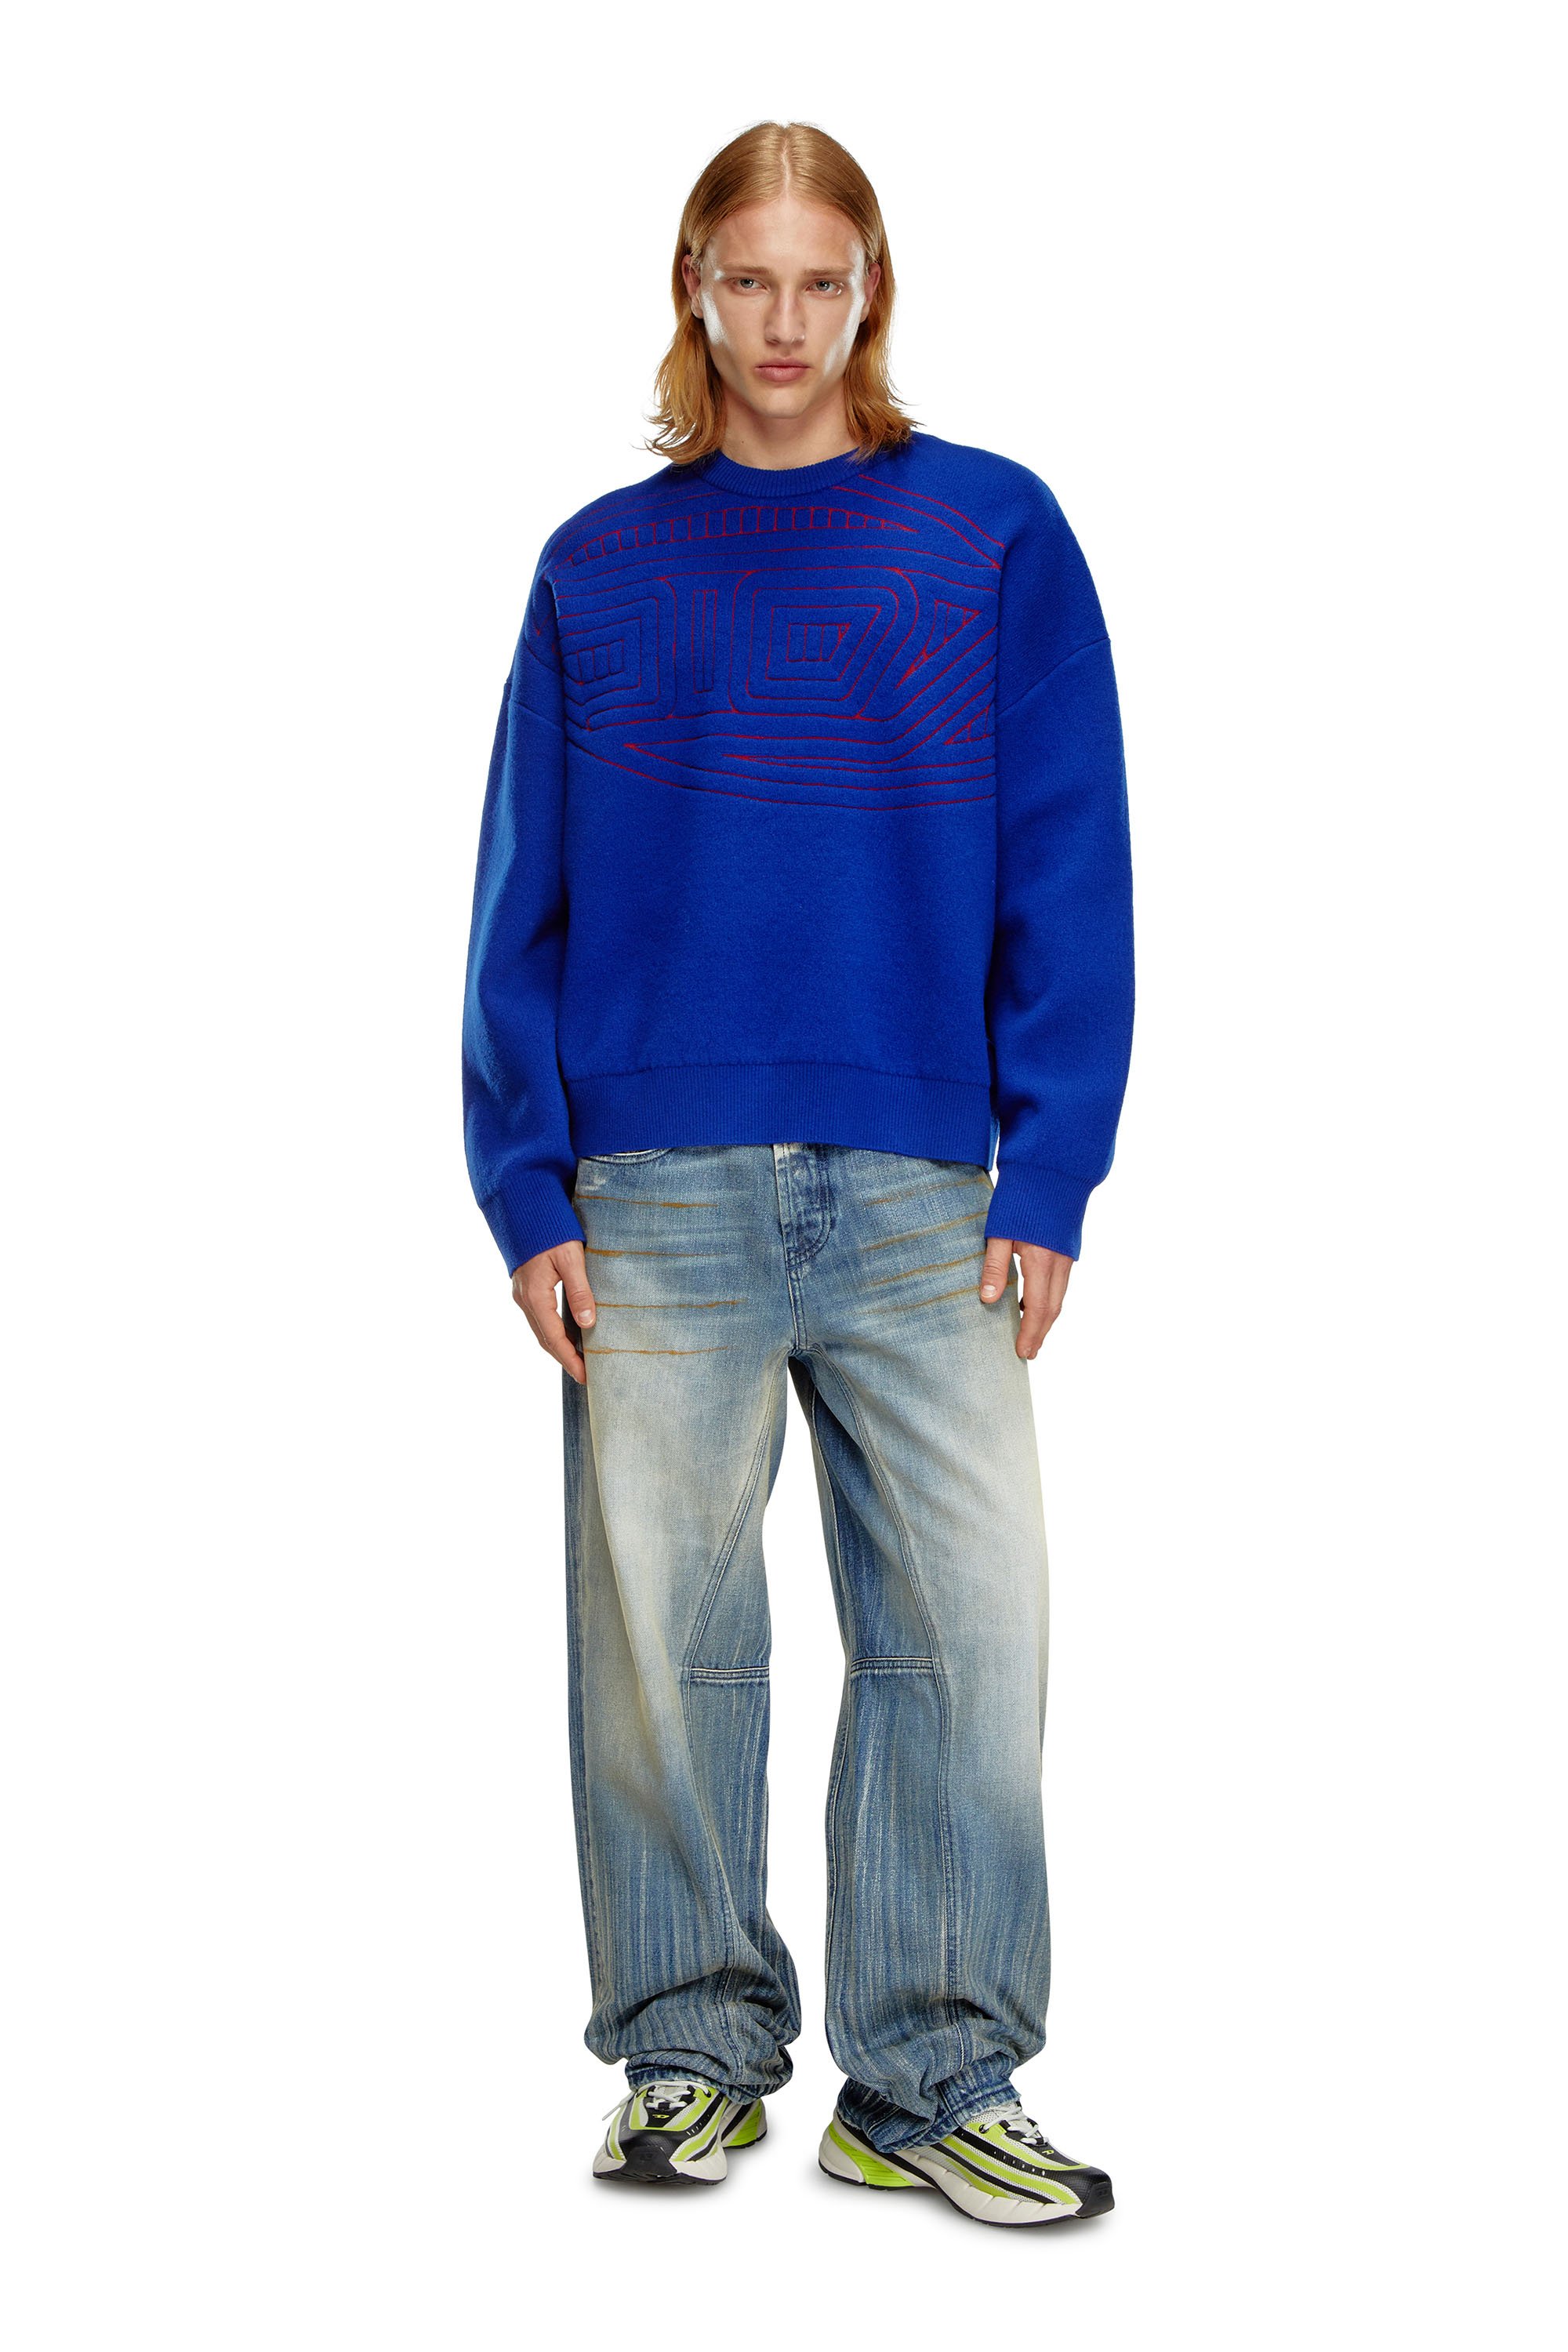 Diesel - K-RATIO, Hombre Jersey de mezcla de lana con logotipo gráfico in Azul marino - Image 4